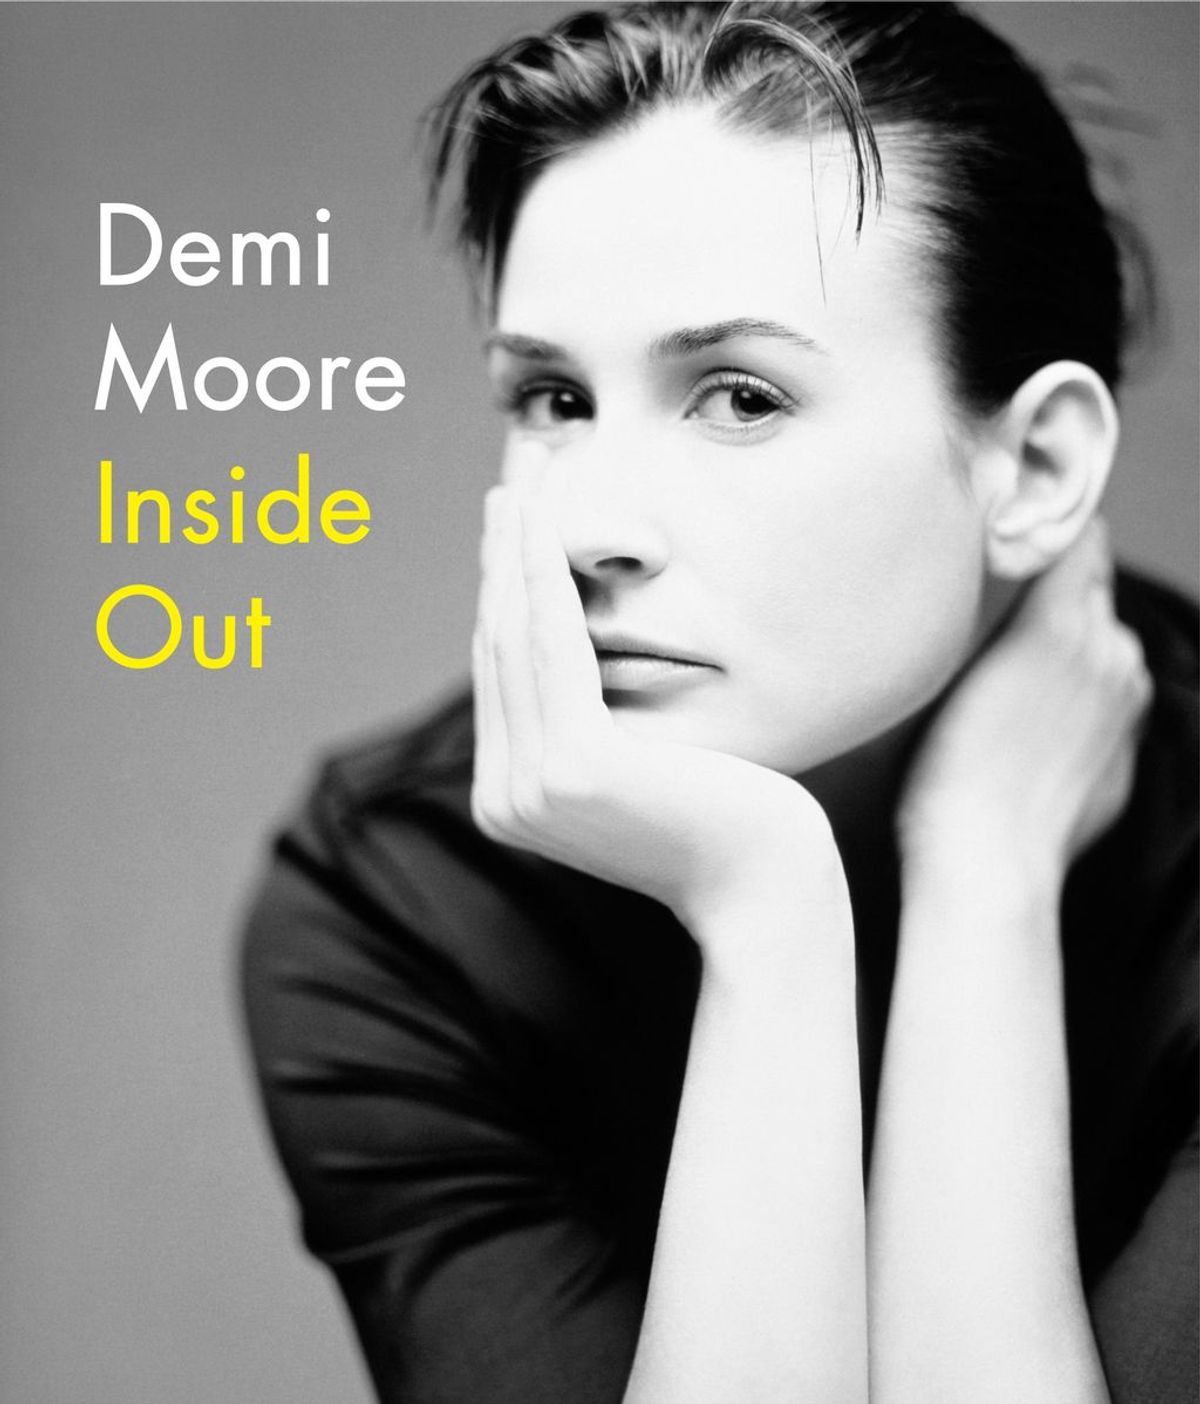 Las memorias de Demi Moore en 'Inside Out' disponibles el 27 de septiembre